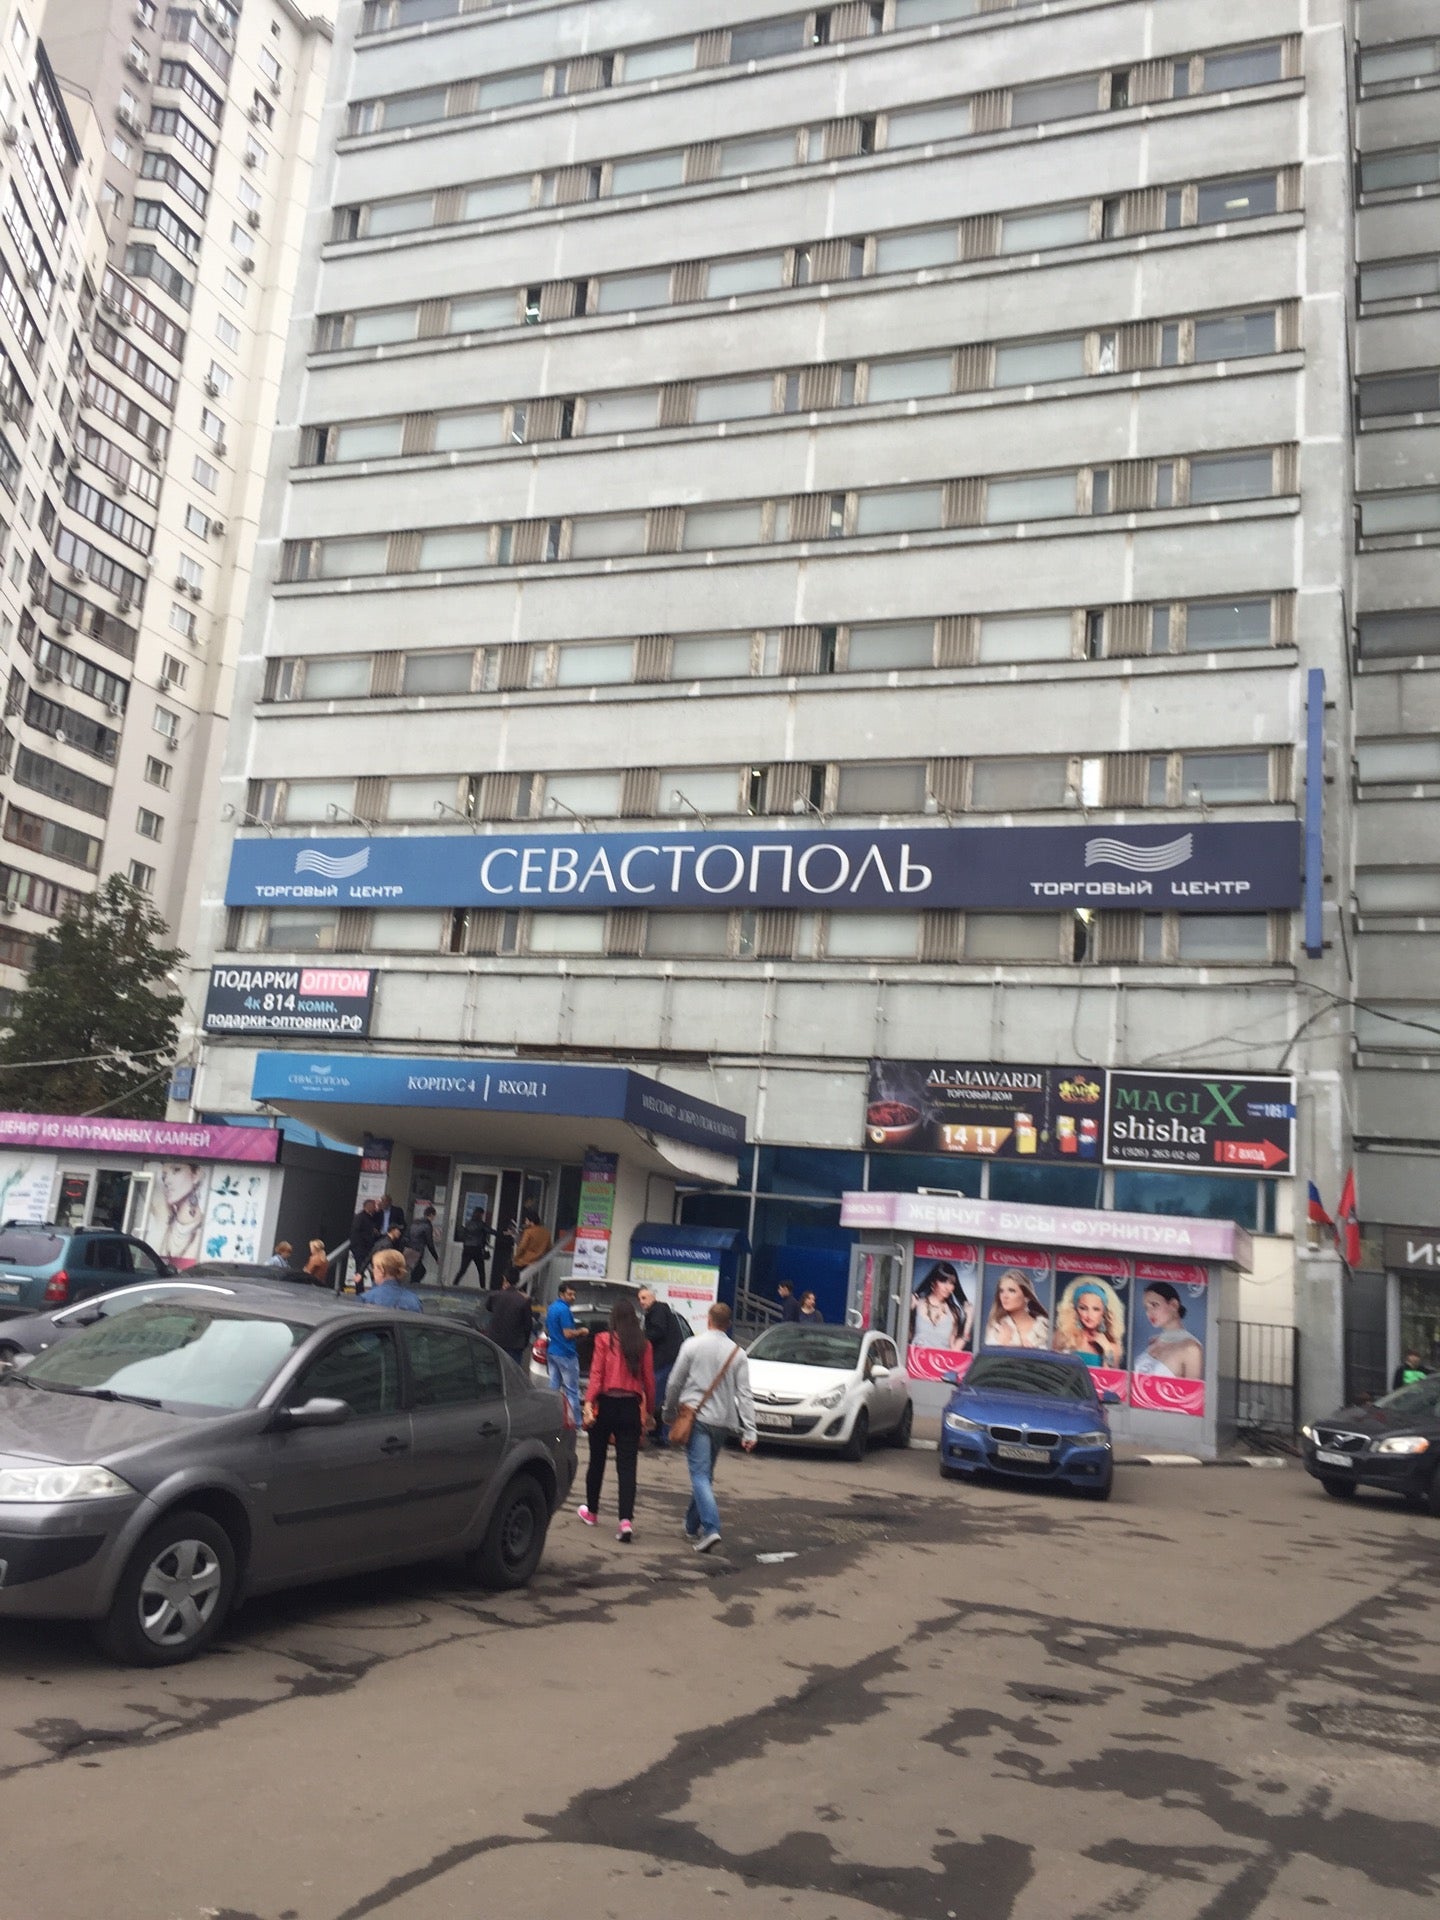 Гостиница севастополь москва рынок